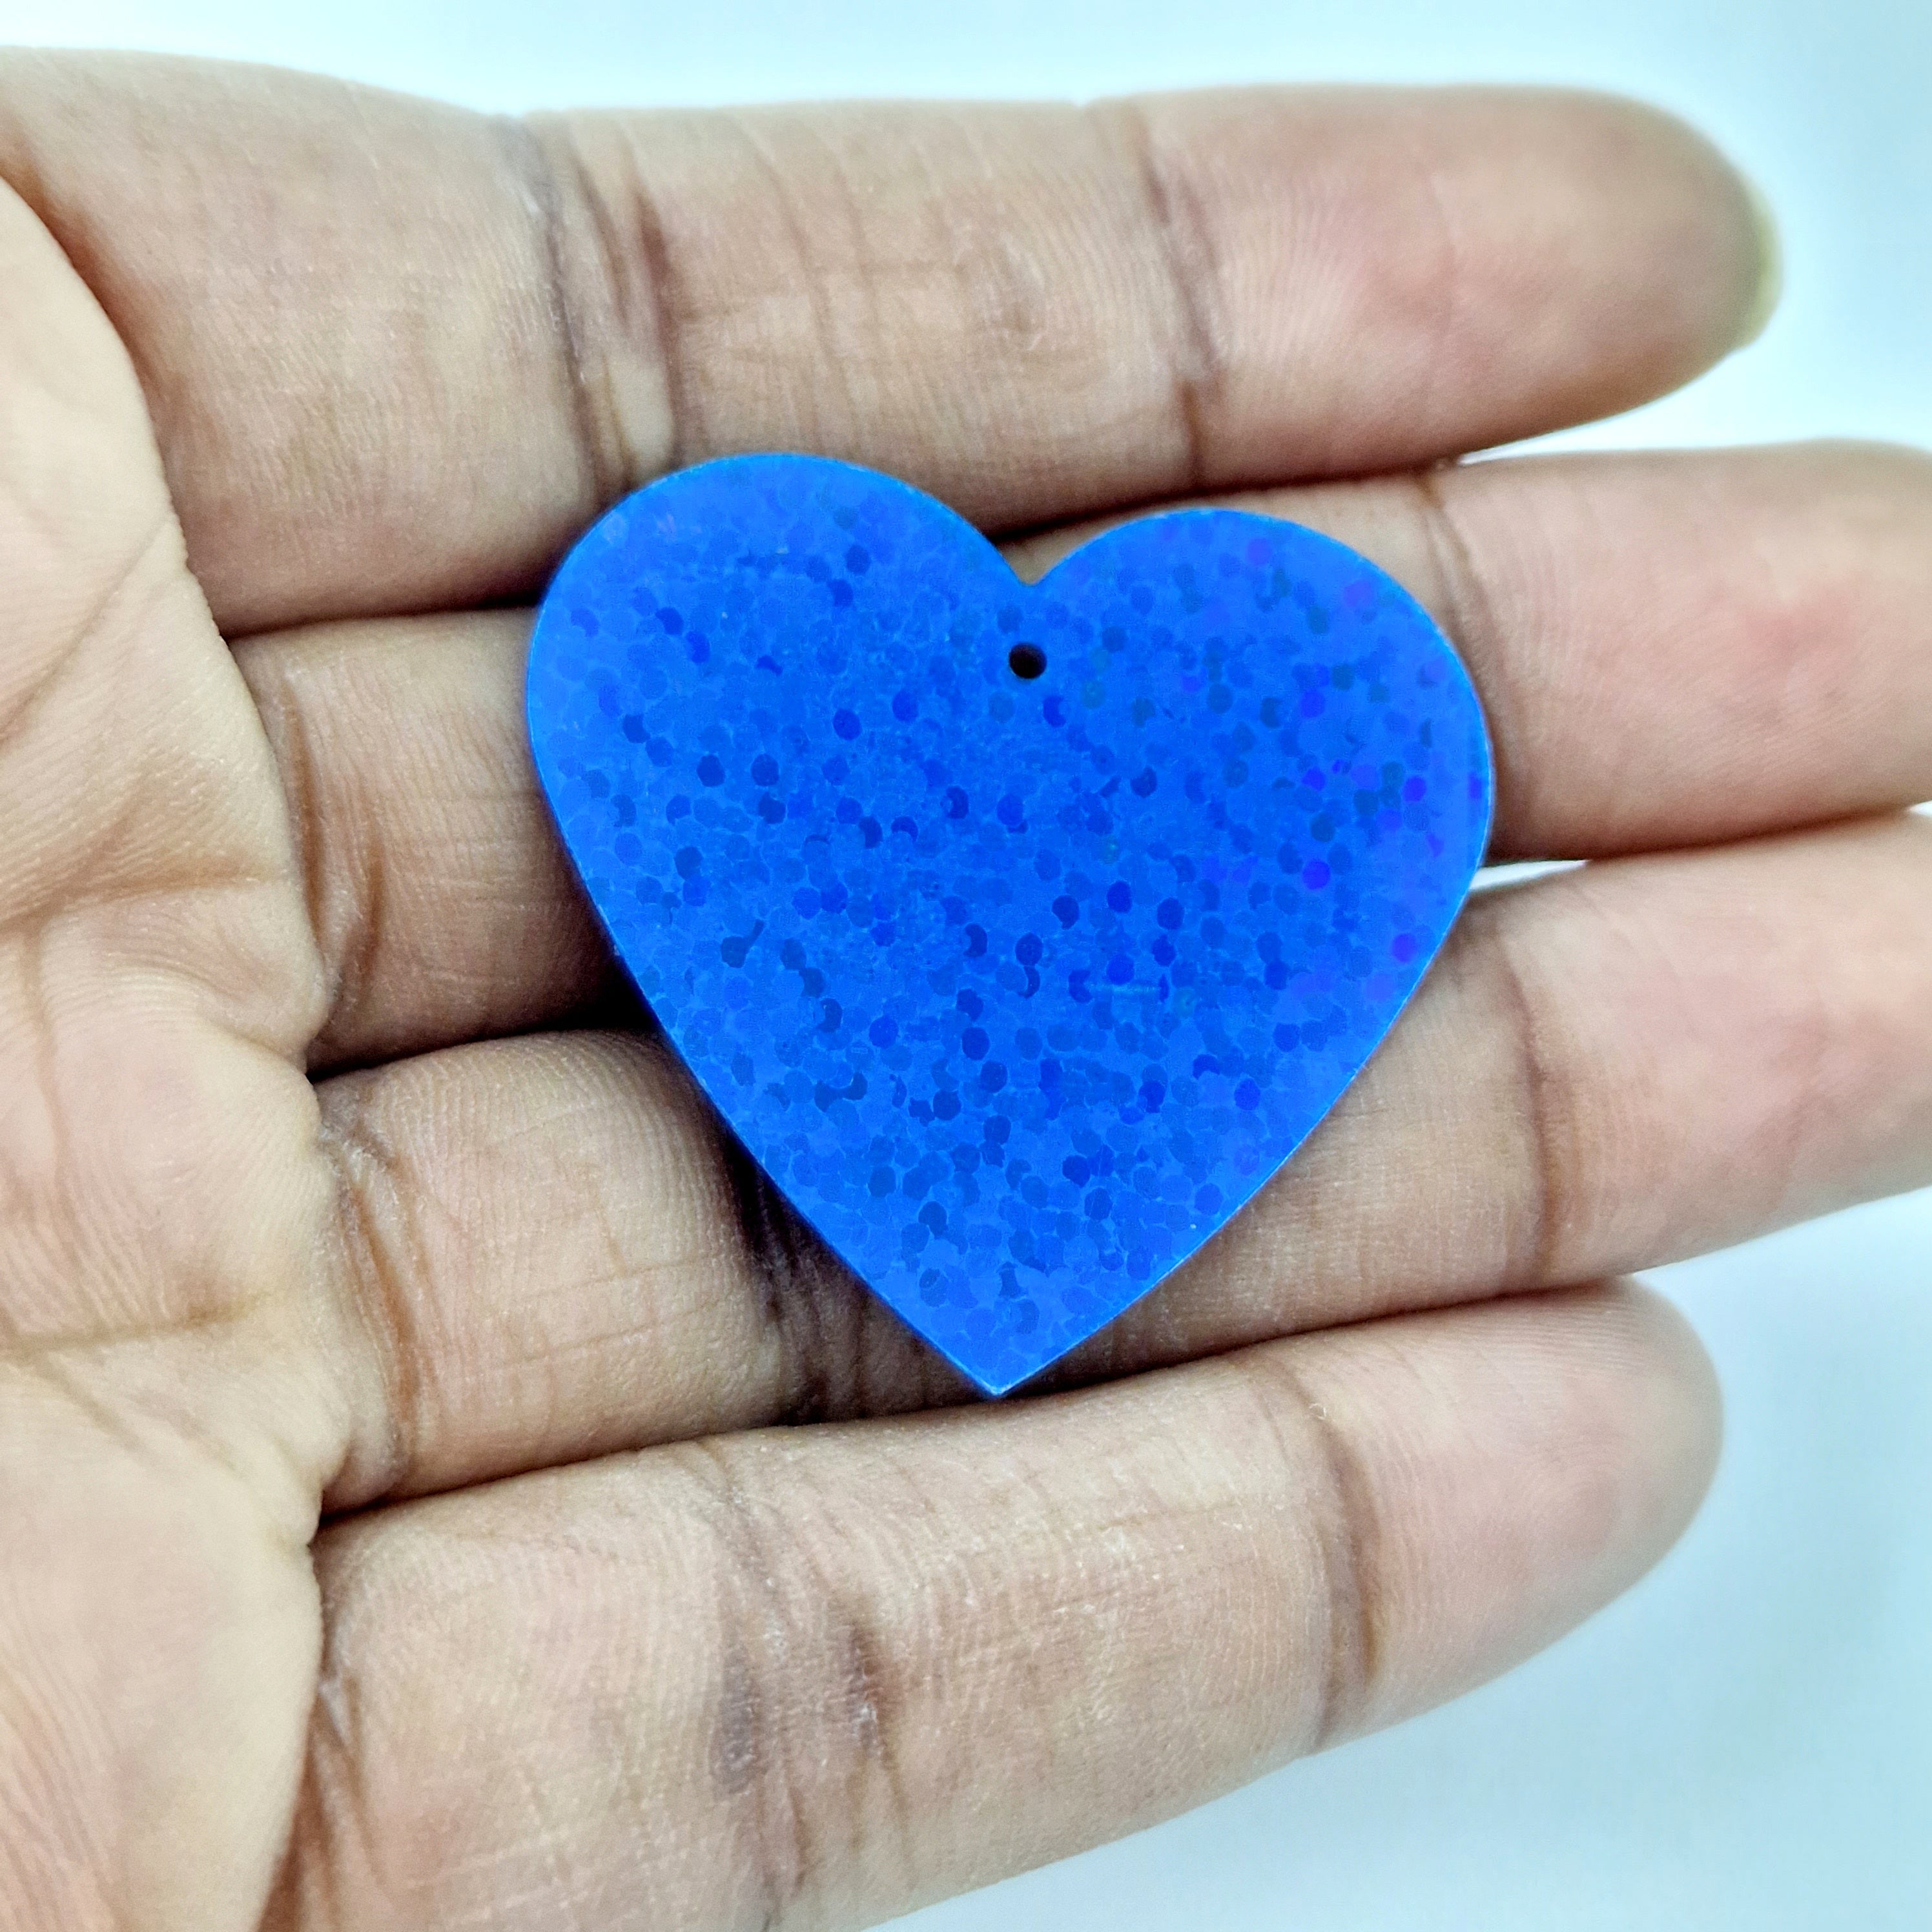 MajorCrafts 35mm 30grams 100pcs Royal Blue Holographic Large Heart PVC Sequins